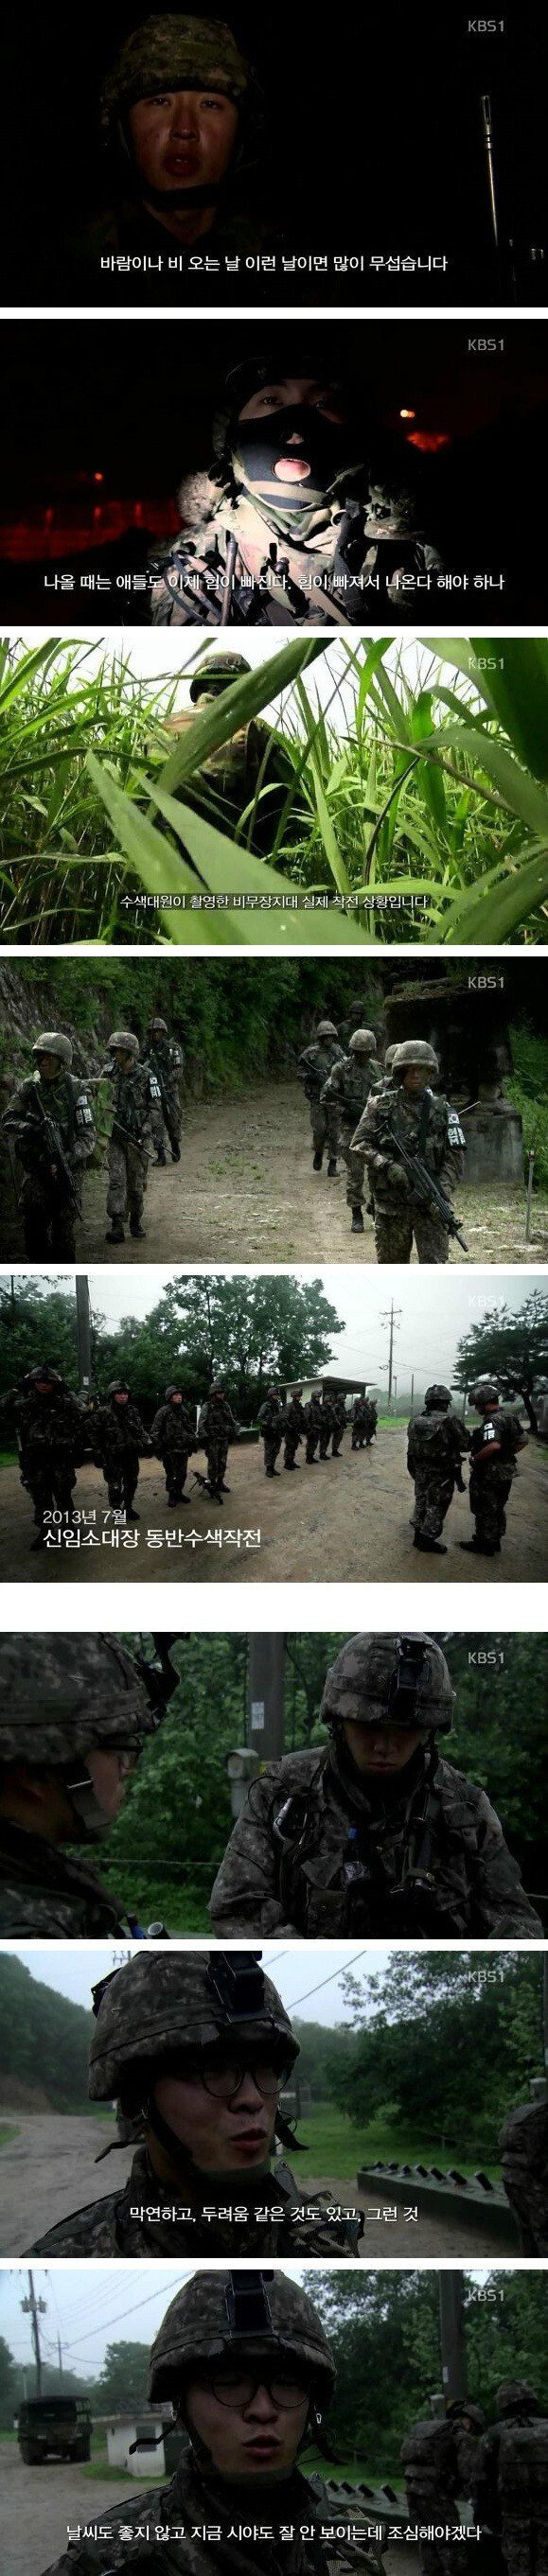 대한민국에서 지뢰를 밟을 확률이 가장 높은 국군 장병들